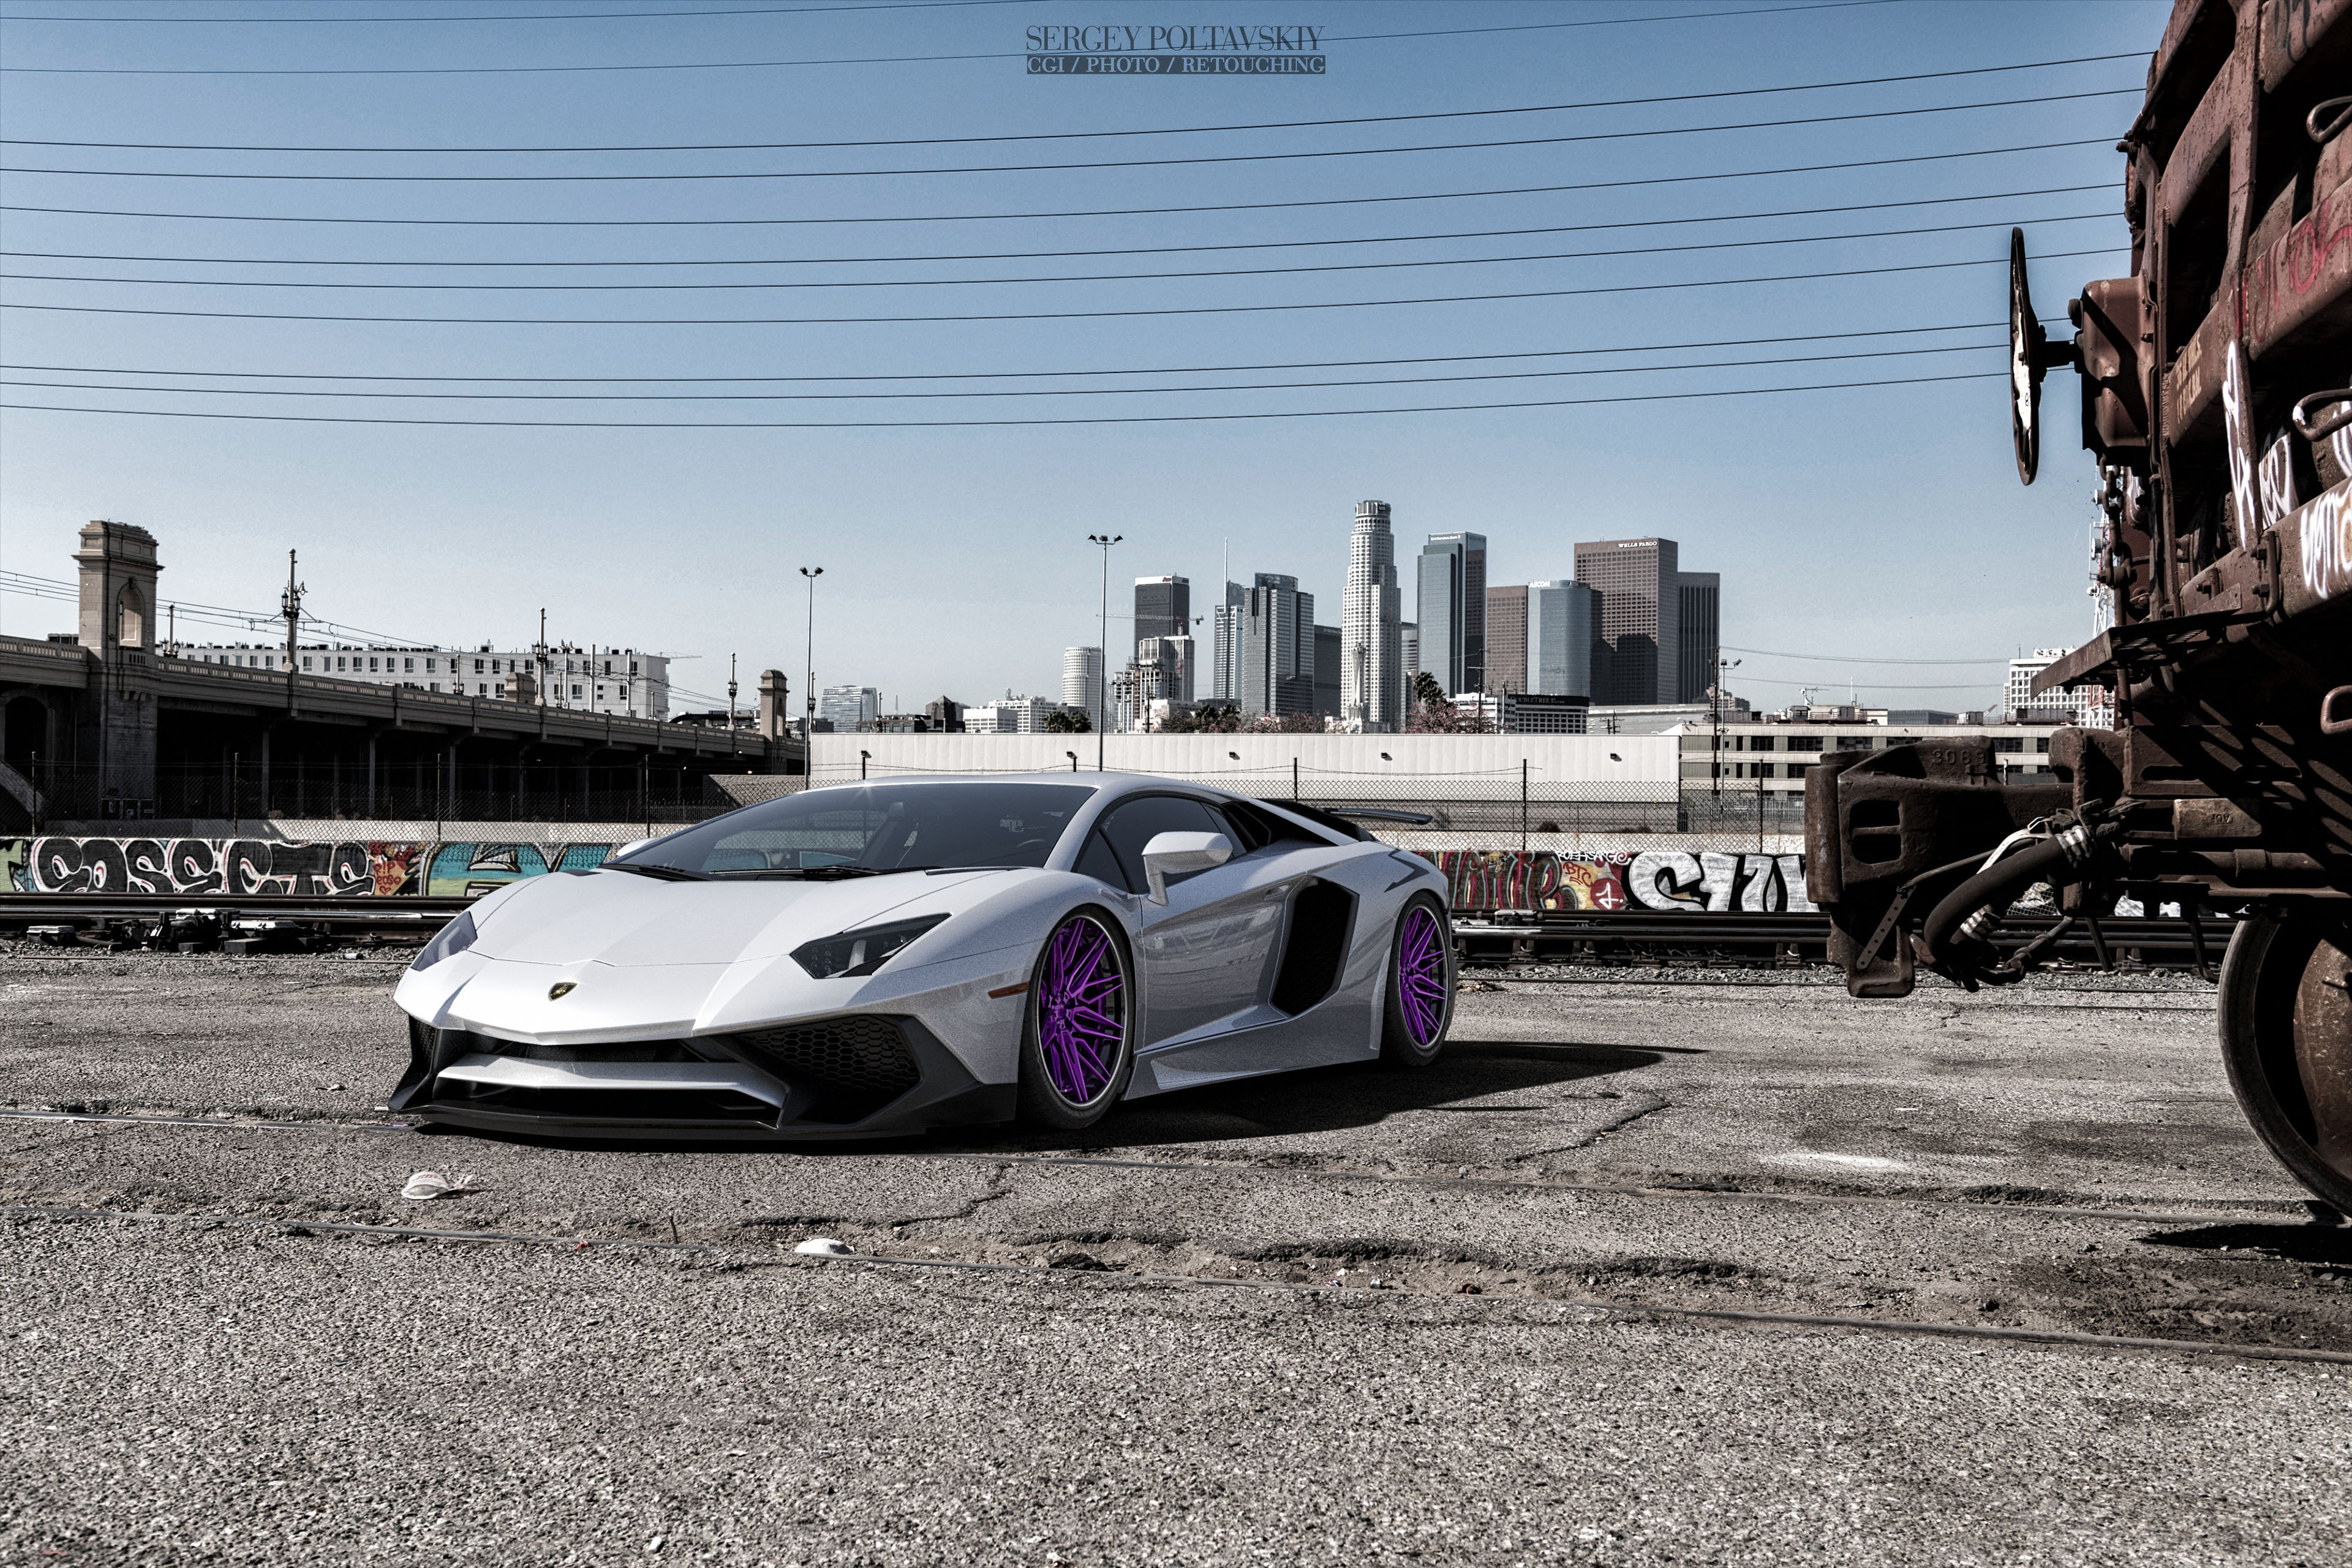 Free photo White Lamborghini on purple rims